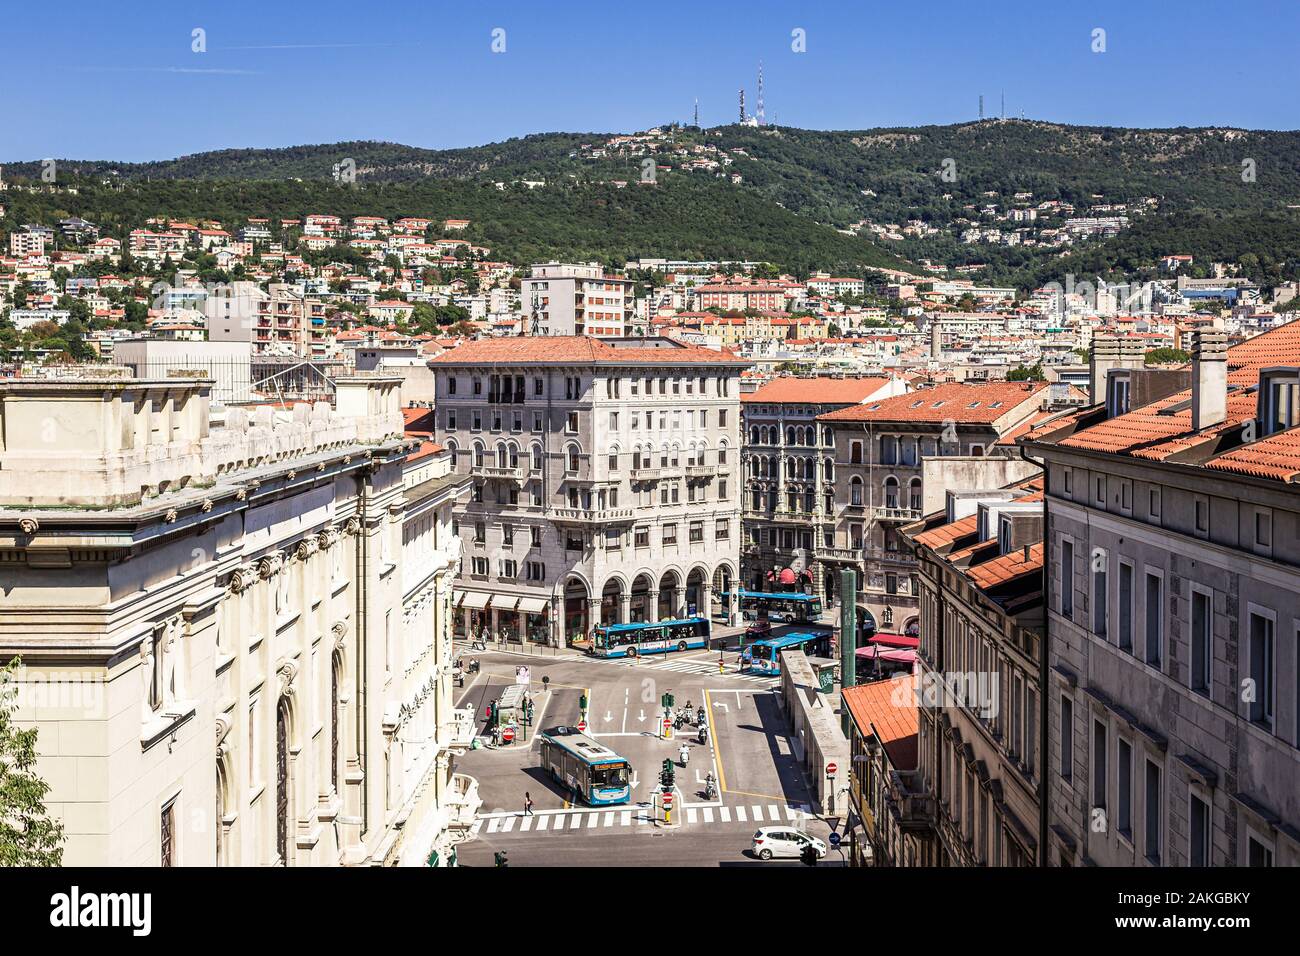 Vue sur la piazza Carlo Goldoni à Trieste, en Italie, à partir de la Scala dei Giganti. Skyline, théâtre et université visible. Banque D'Images